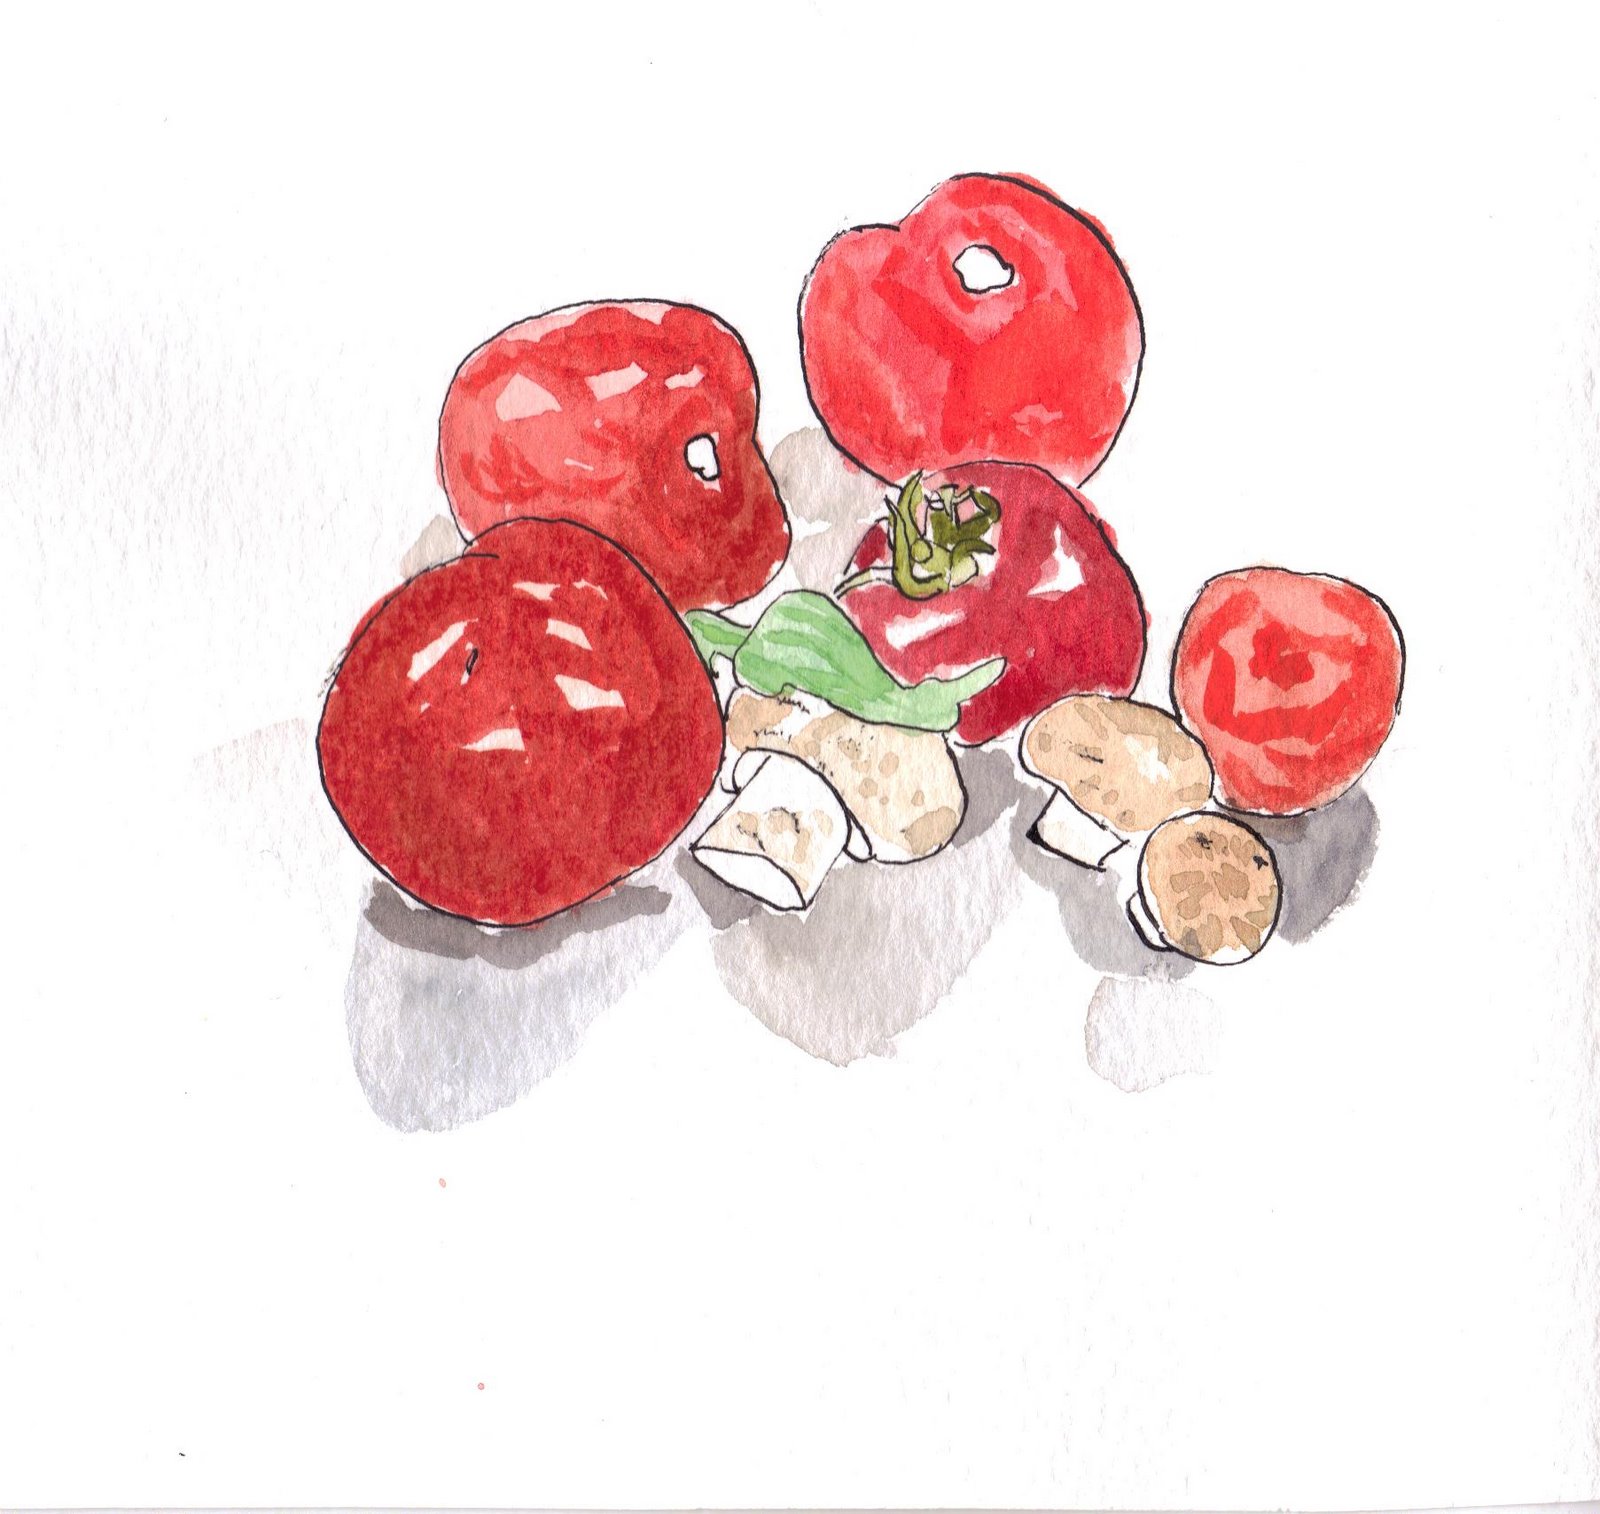 [2008-02-28-tomatoes-jpeg.JPG]